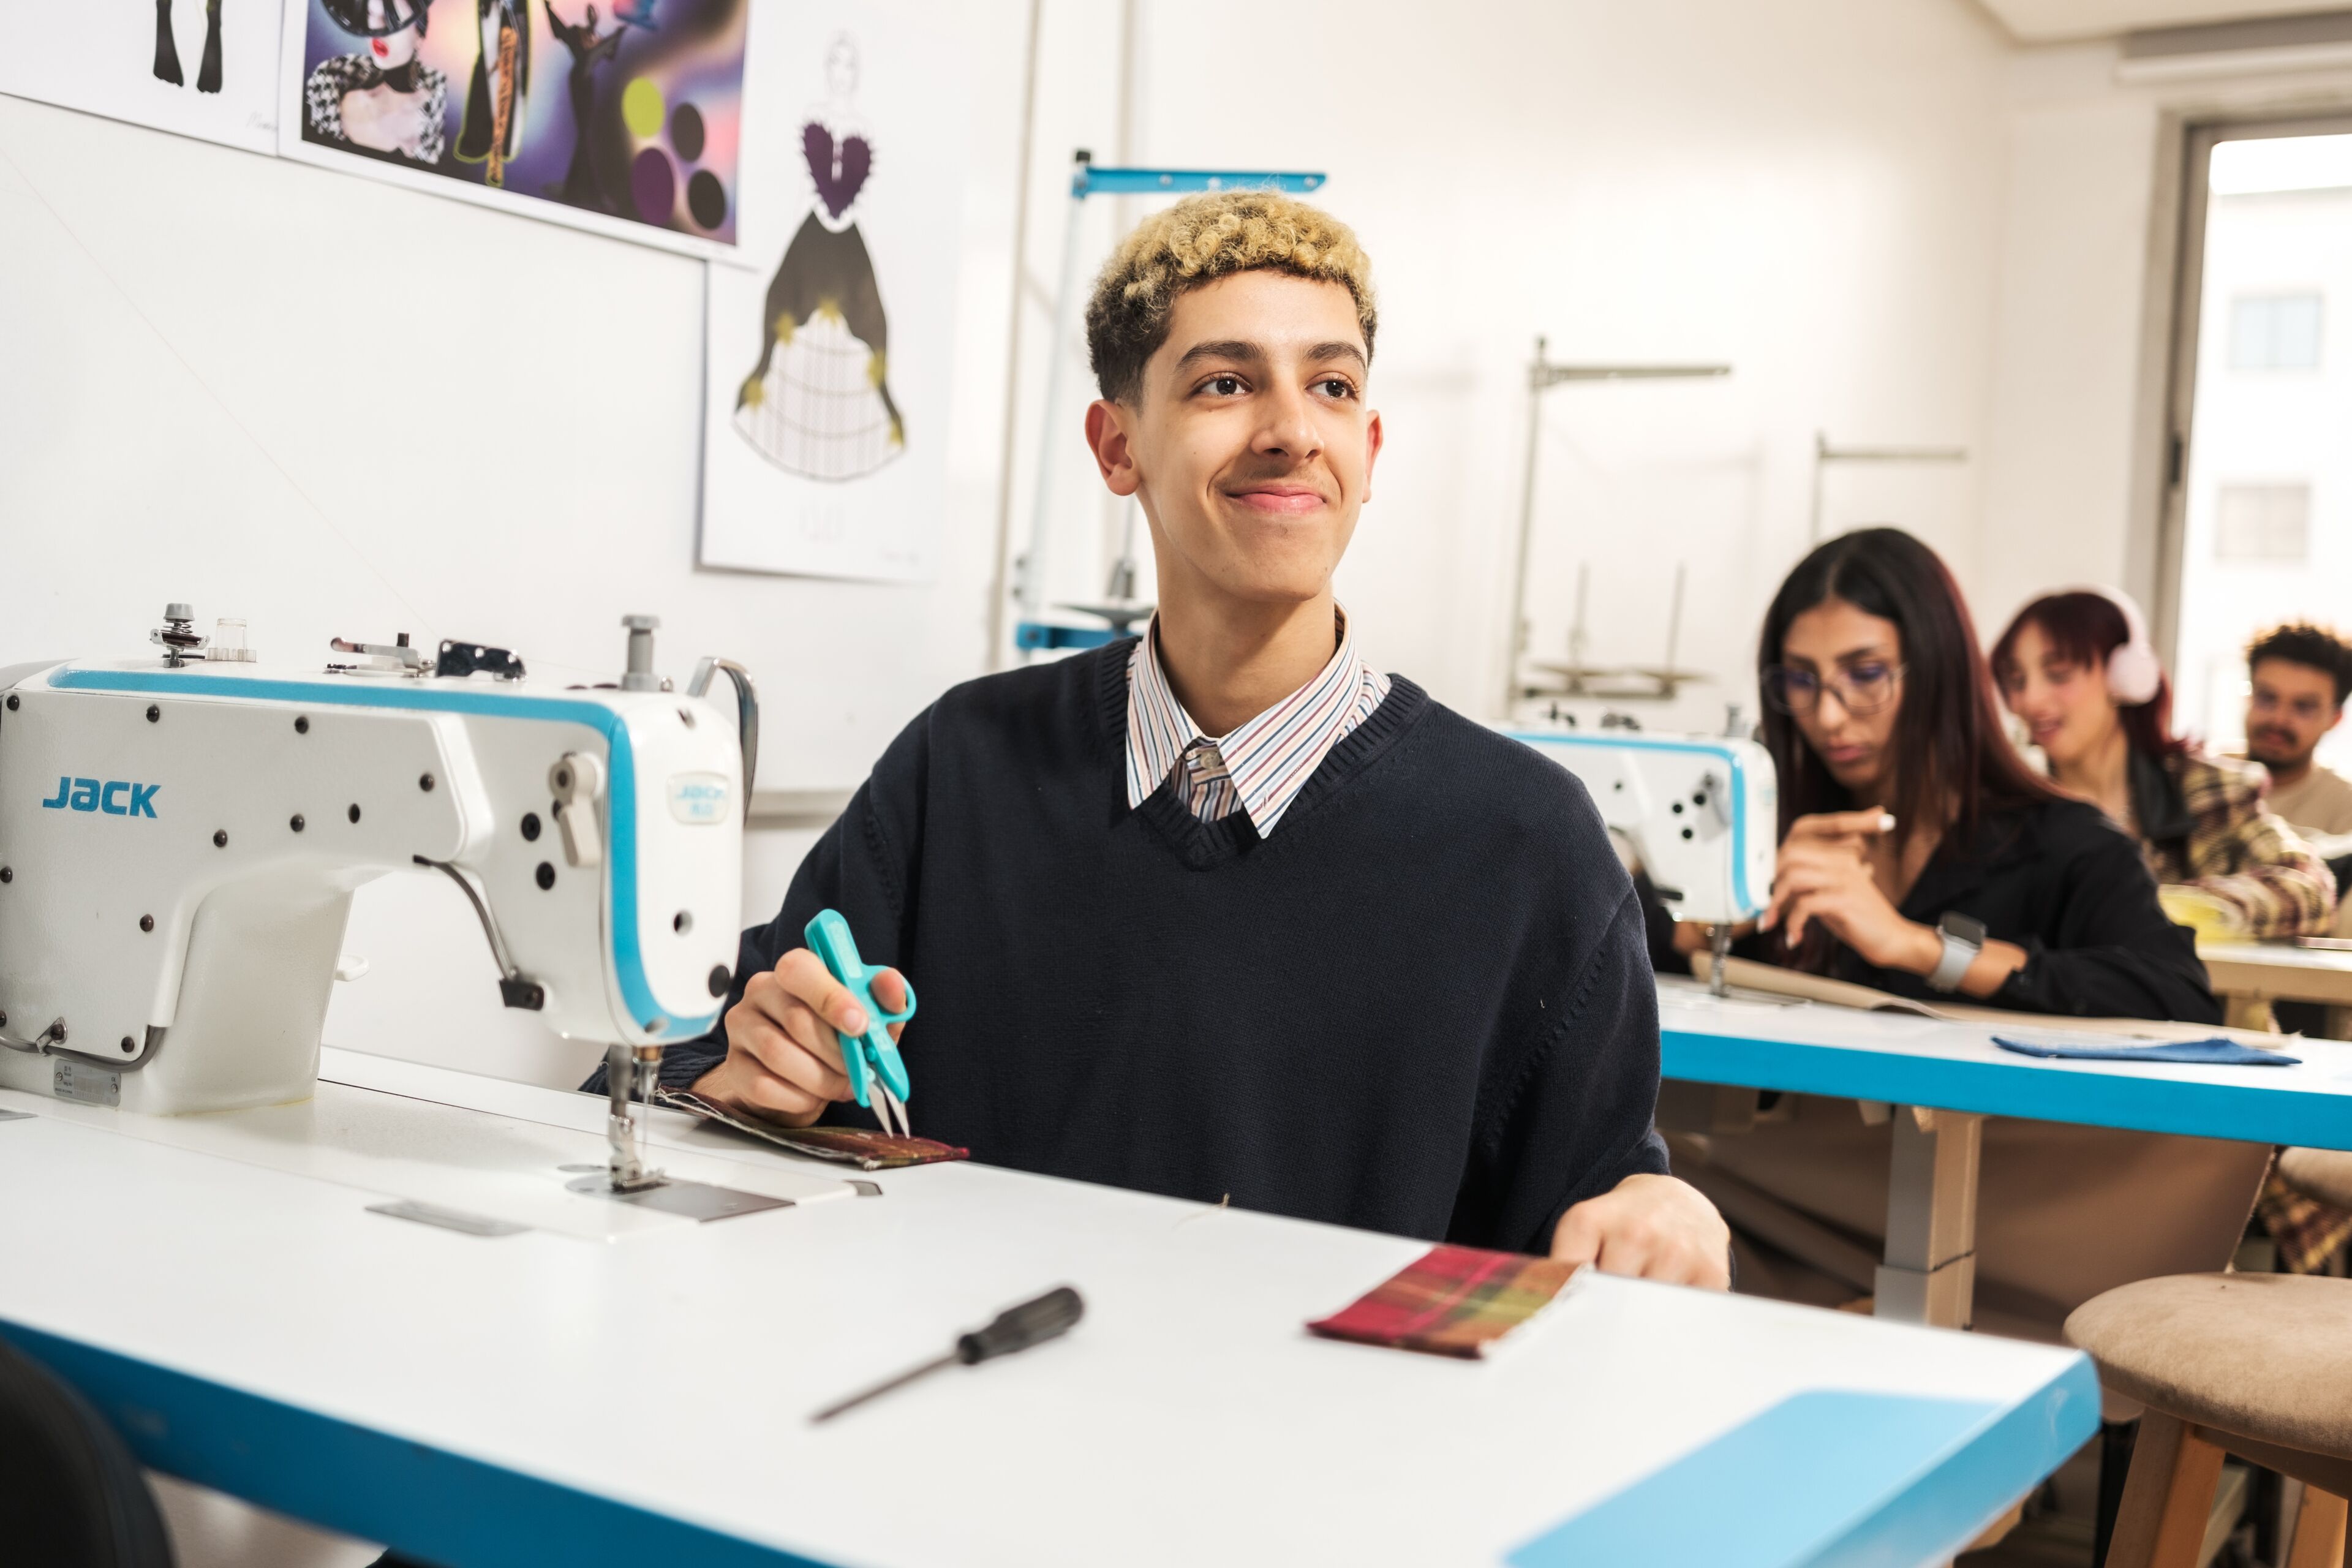 Un jeune étudiant aux cheveux bouclés sourit, tenant des ciseaux dans une classe de design de mode, avec des machines à coudre et des camarades concentrés en arrière-plan.